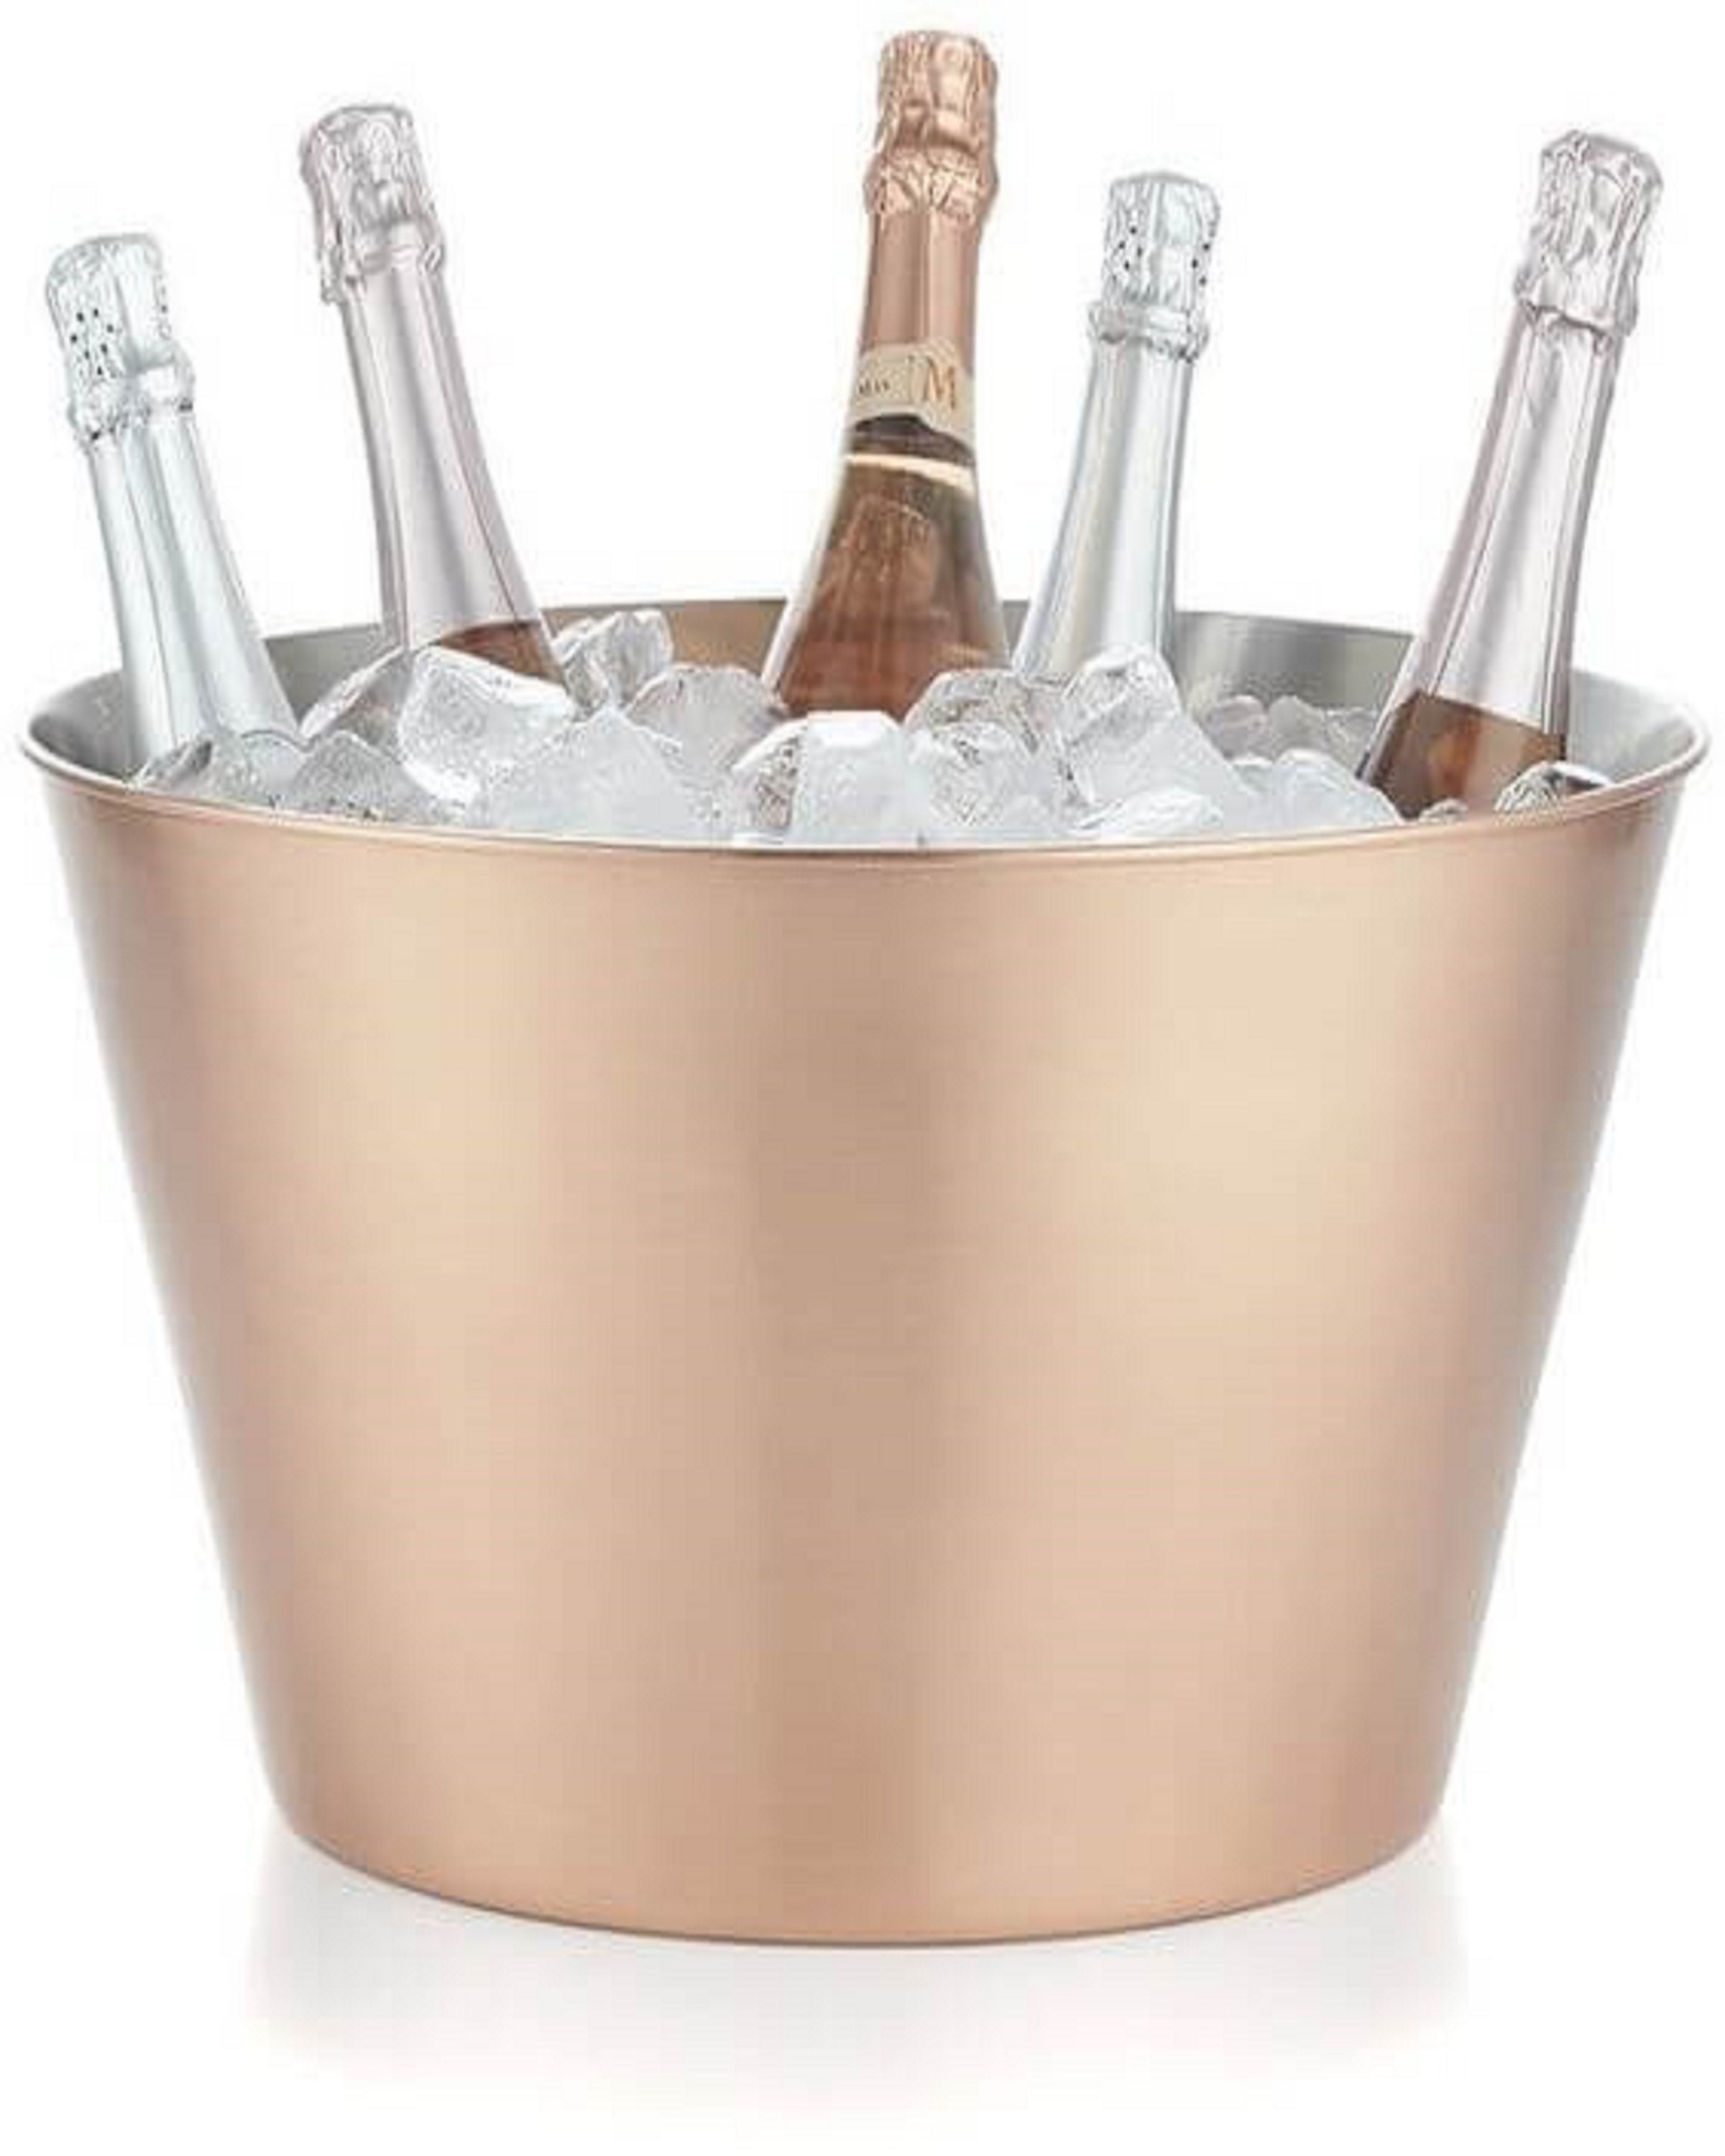 Luxury golden ice bucket